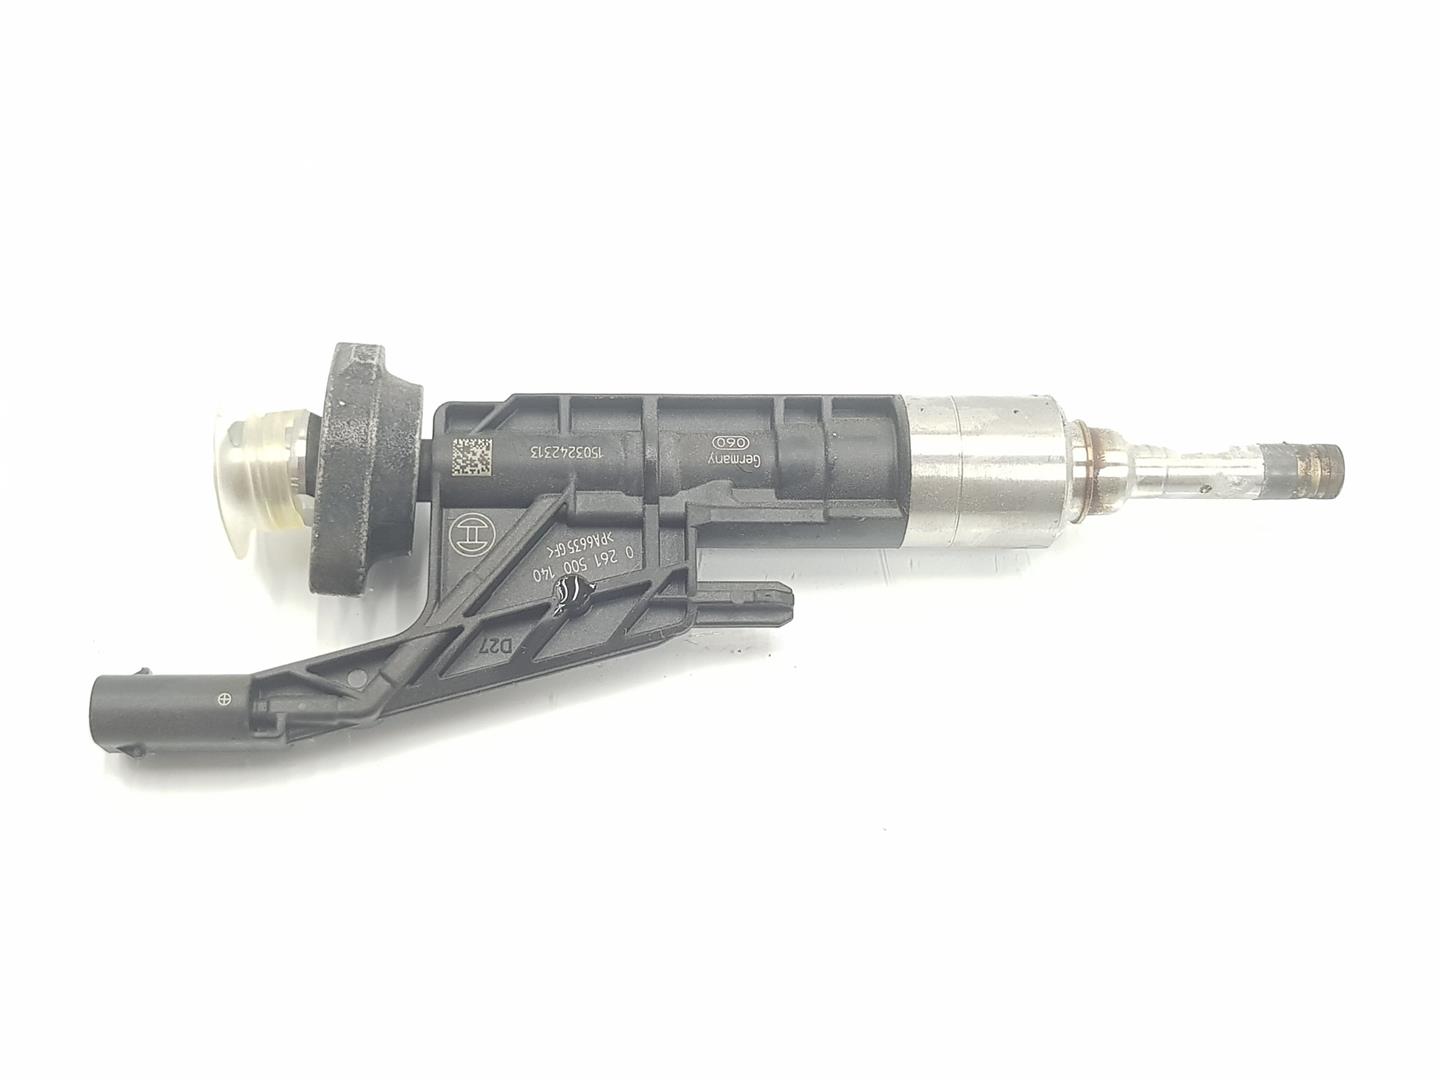 MINI Cooper F56 (2013-2020) Fuel Injector 13537639990, 0261500140, 1212CD2222DL 24153124